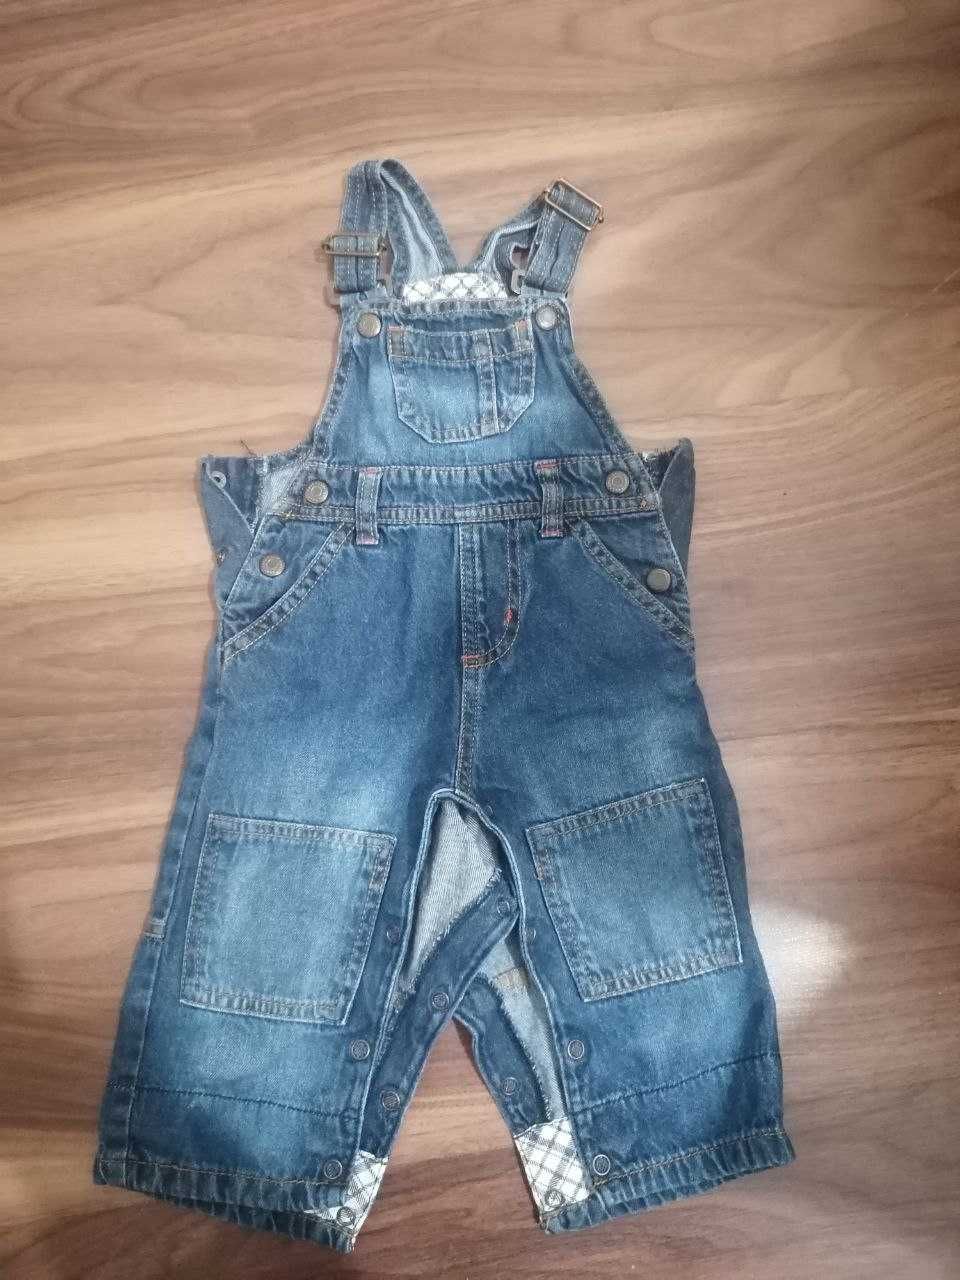 Дитячний джинсовий комбінезон від бренду Lupilu у розмірі 68.